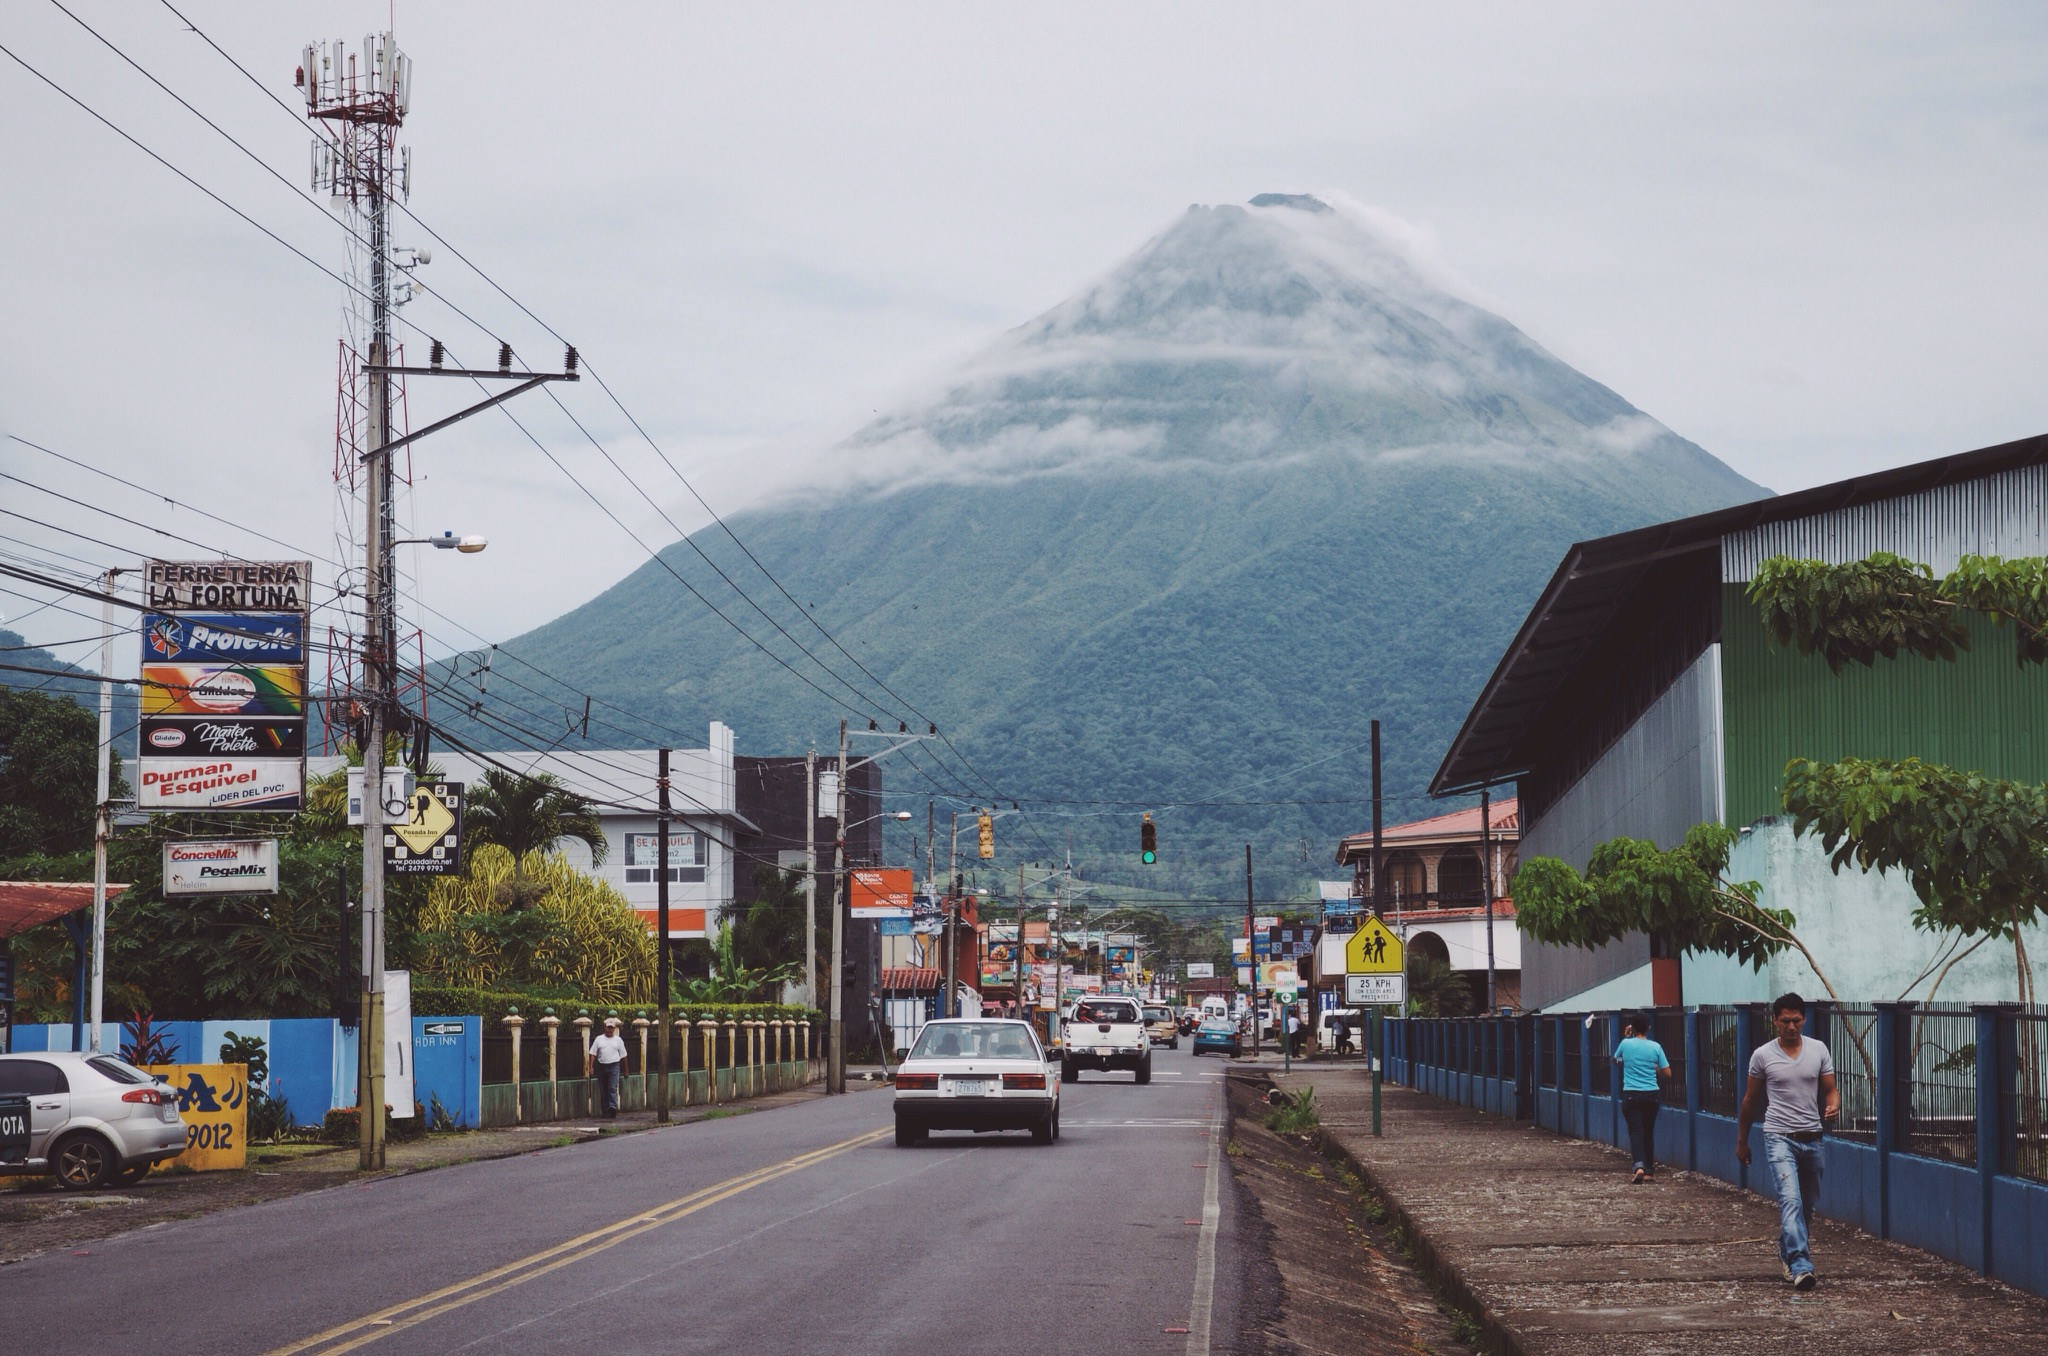 la fortuna town - arenal volcano - costa rica